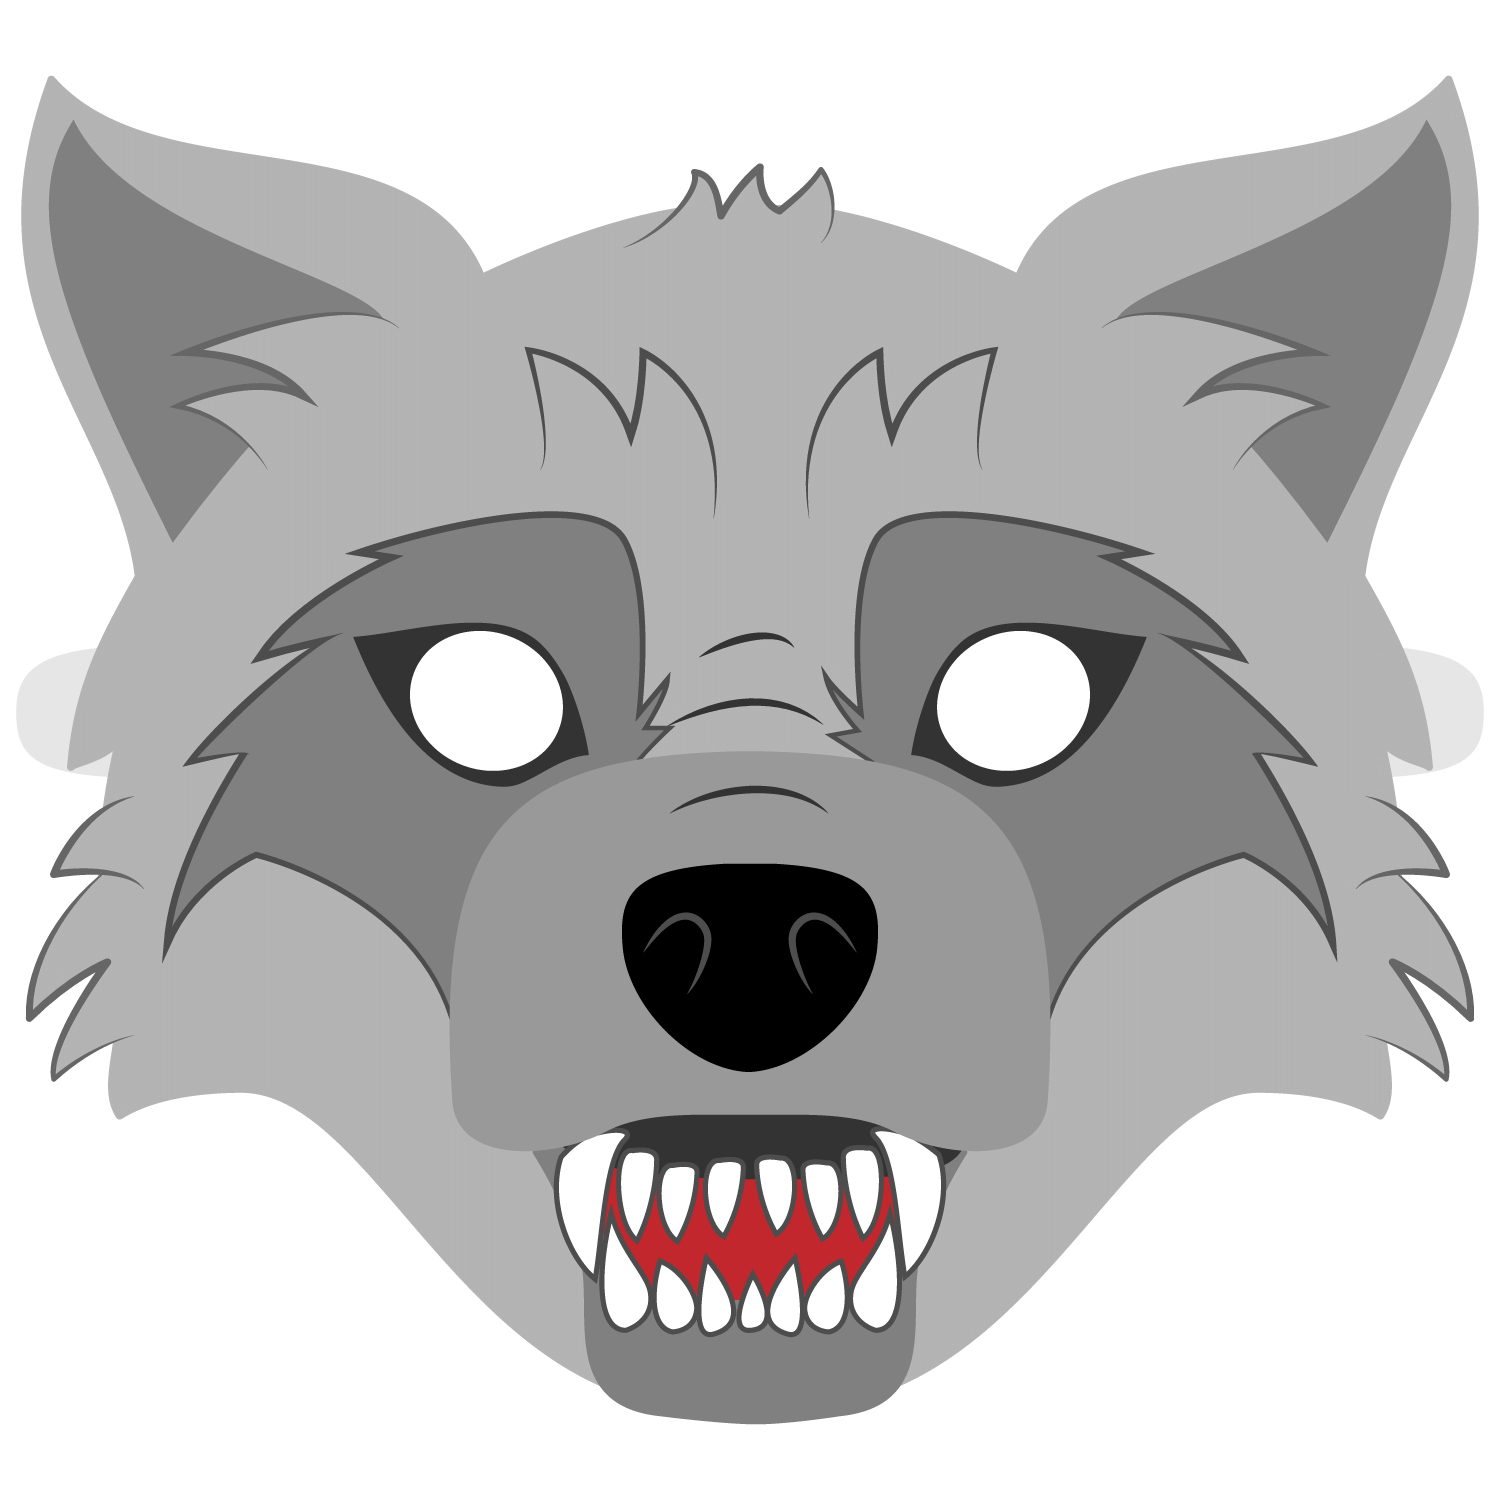 Big Bad Wolf Mask Template | Free Printable Papercraft Templates - Free Printable Wolf Mask